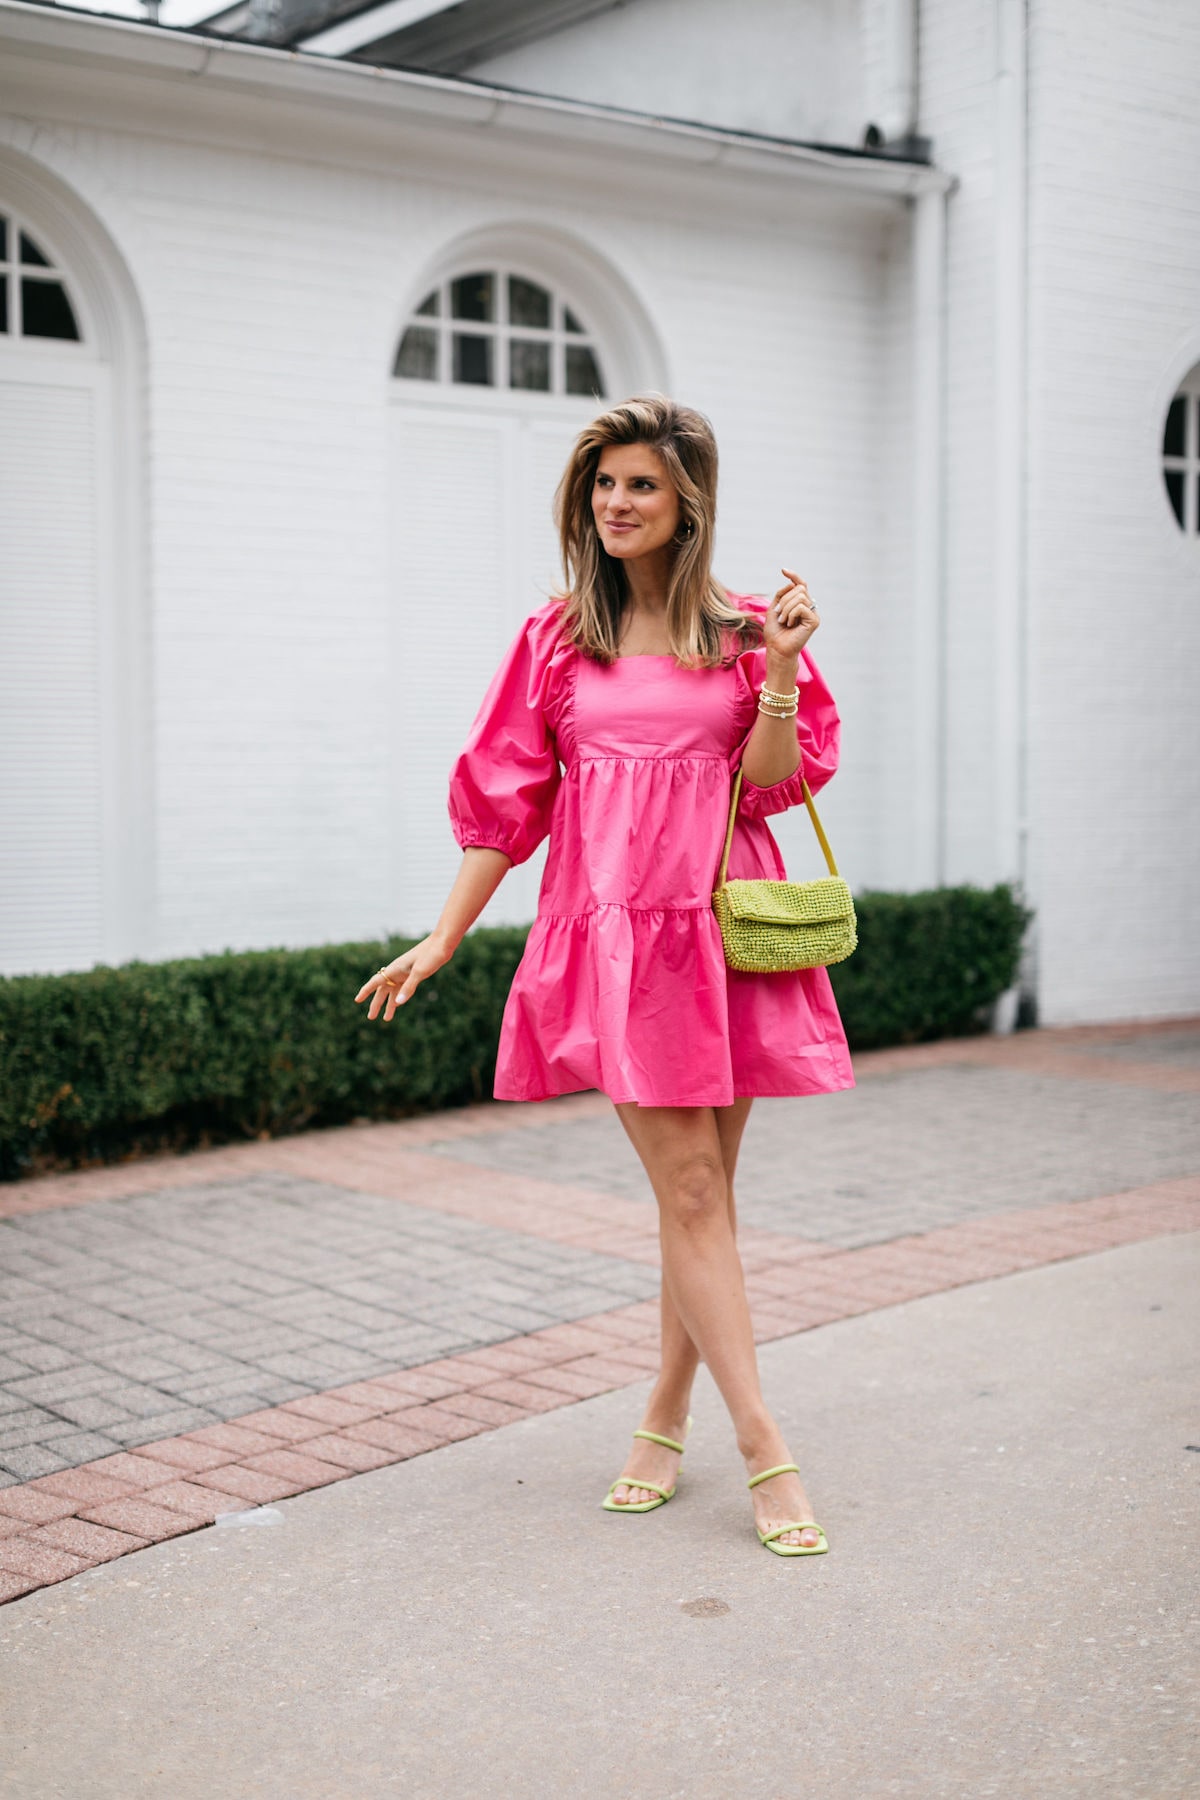 Brighton Butler wearing pink target dress and mango green beaded spring bag